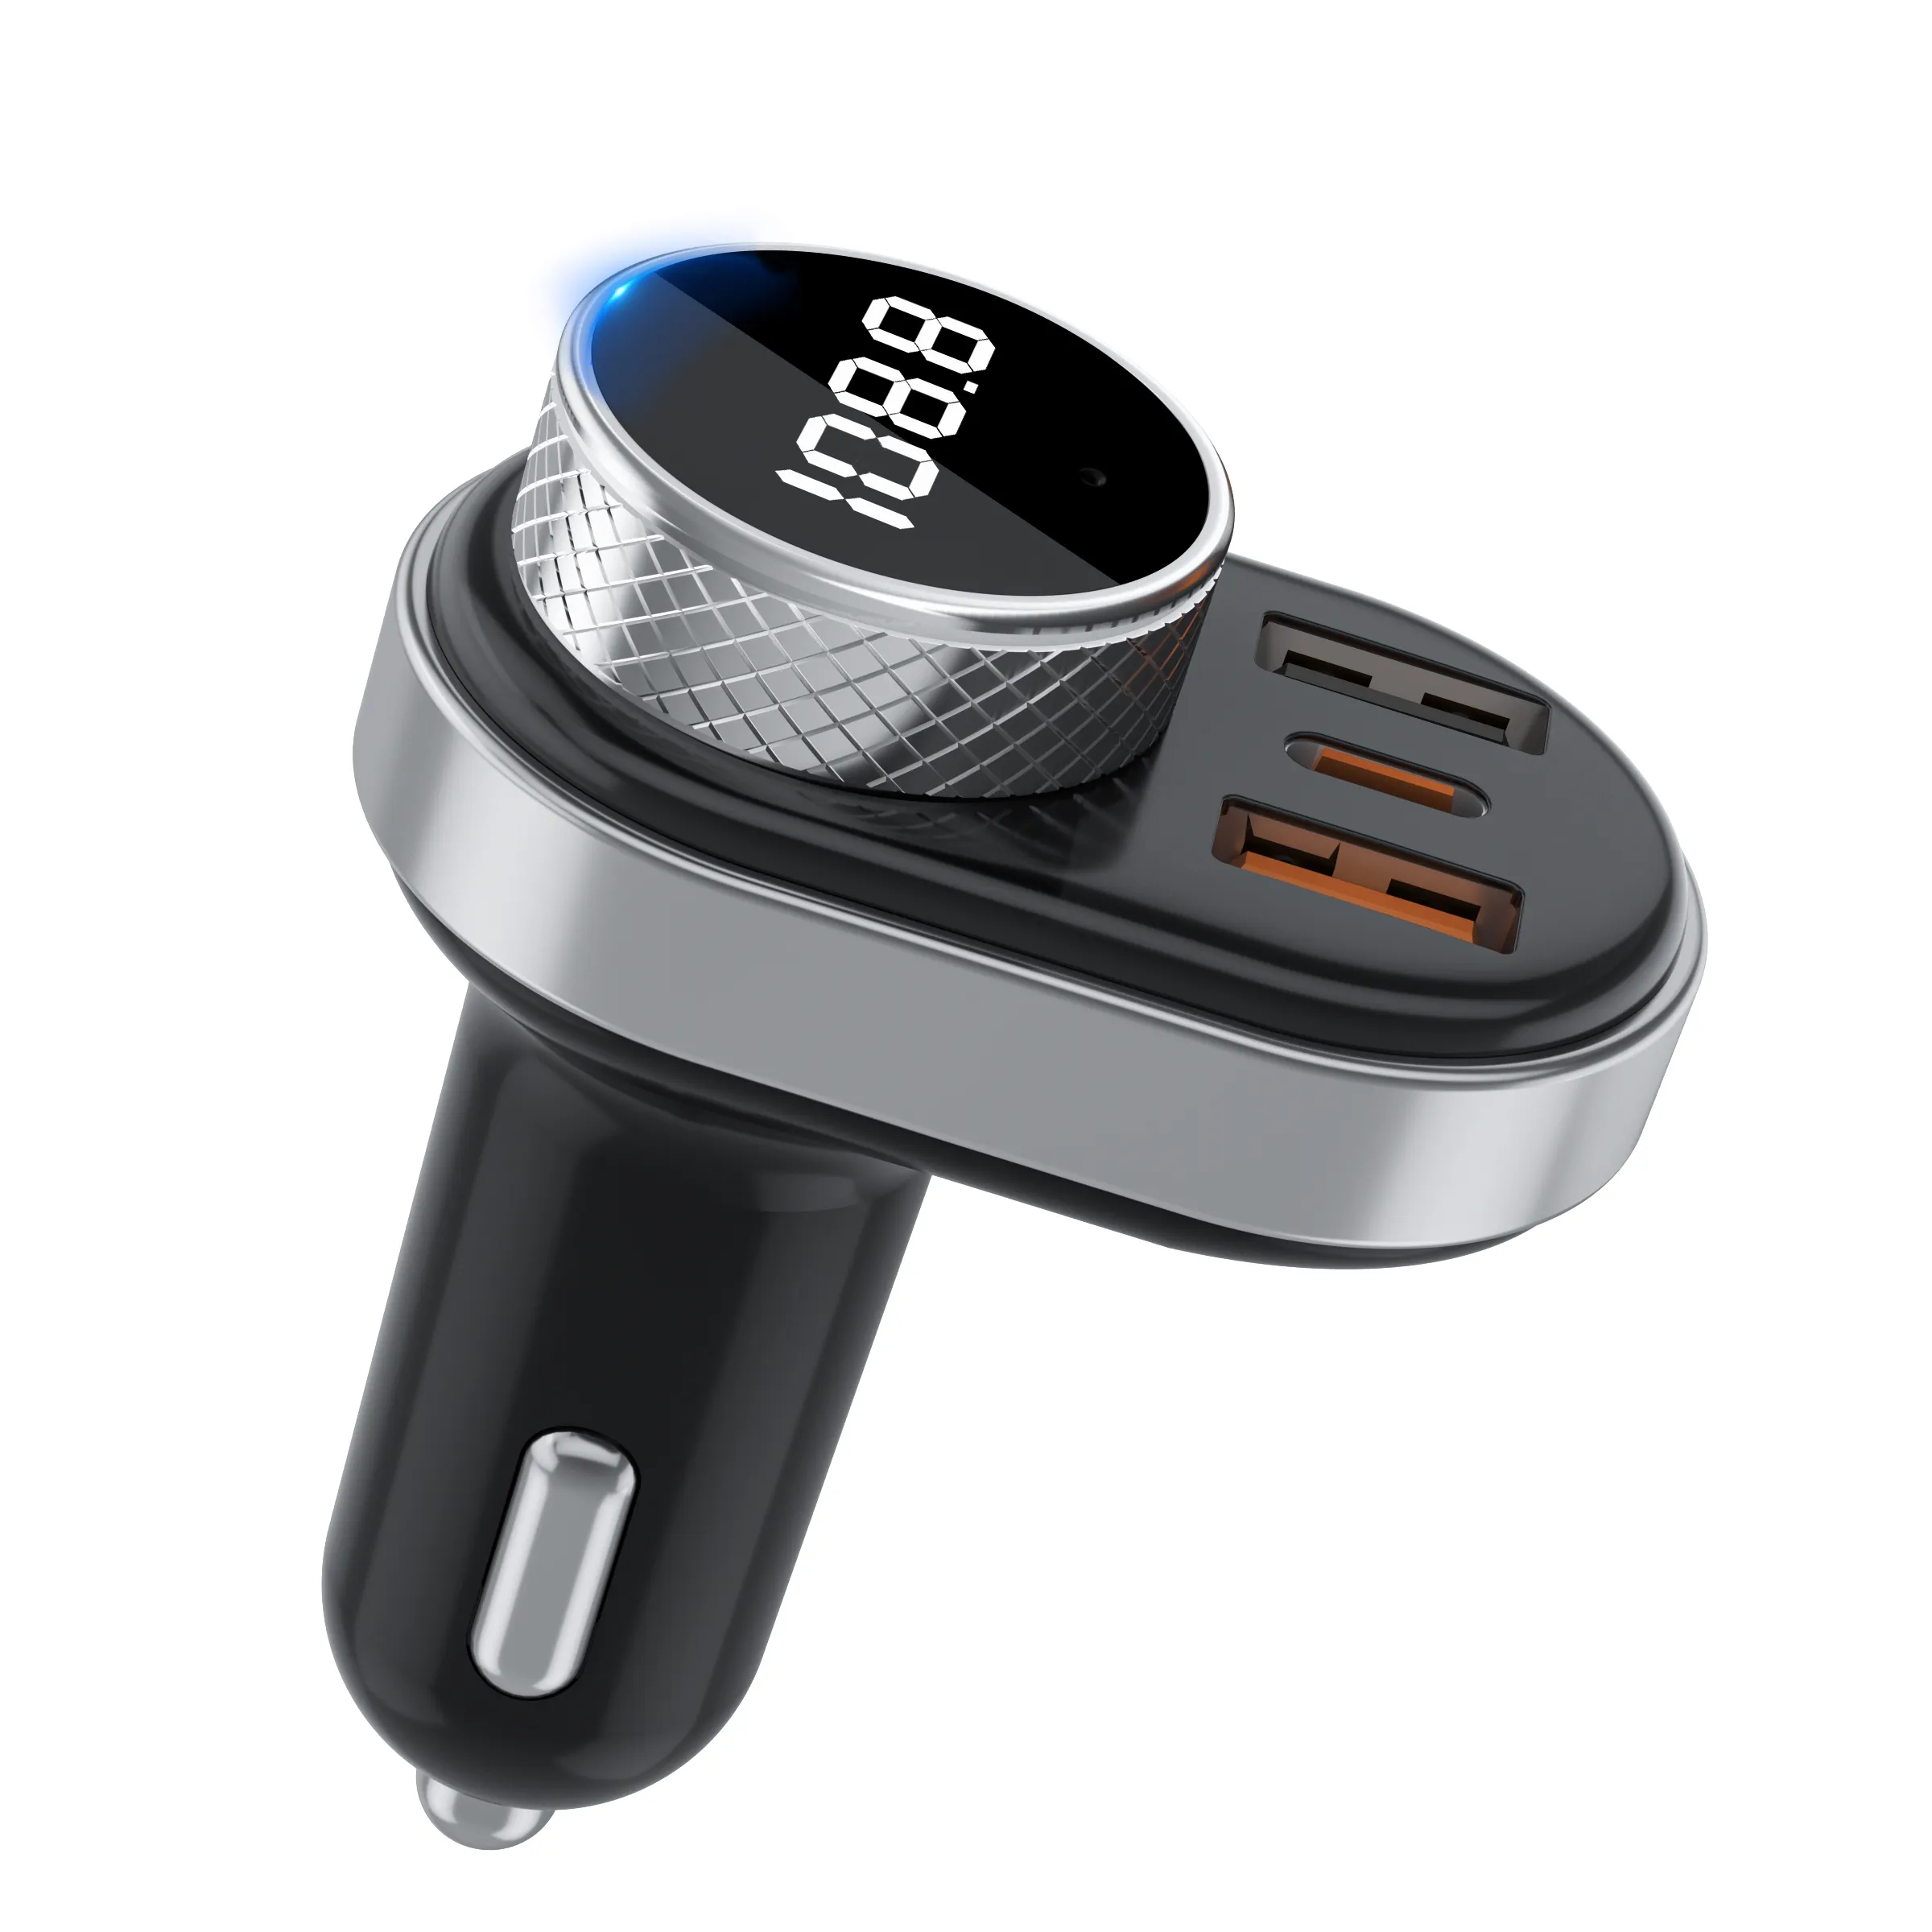 Bluetooth FM-передатчик аудио плеер в автомобиле беспроводной радио адаптер цветной дисплей громкой связи SD/TF карта USB Автомобильное зарядное устройство